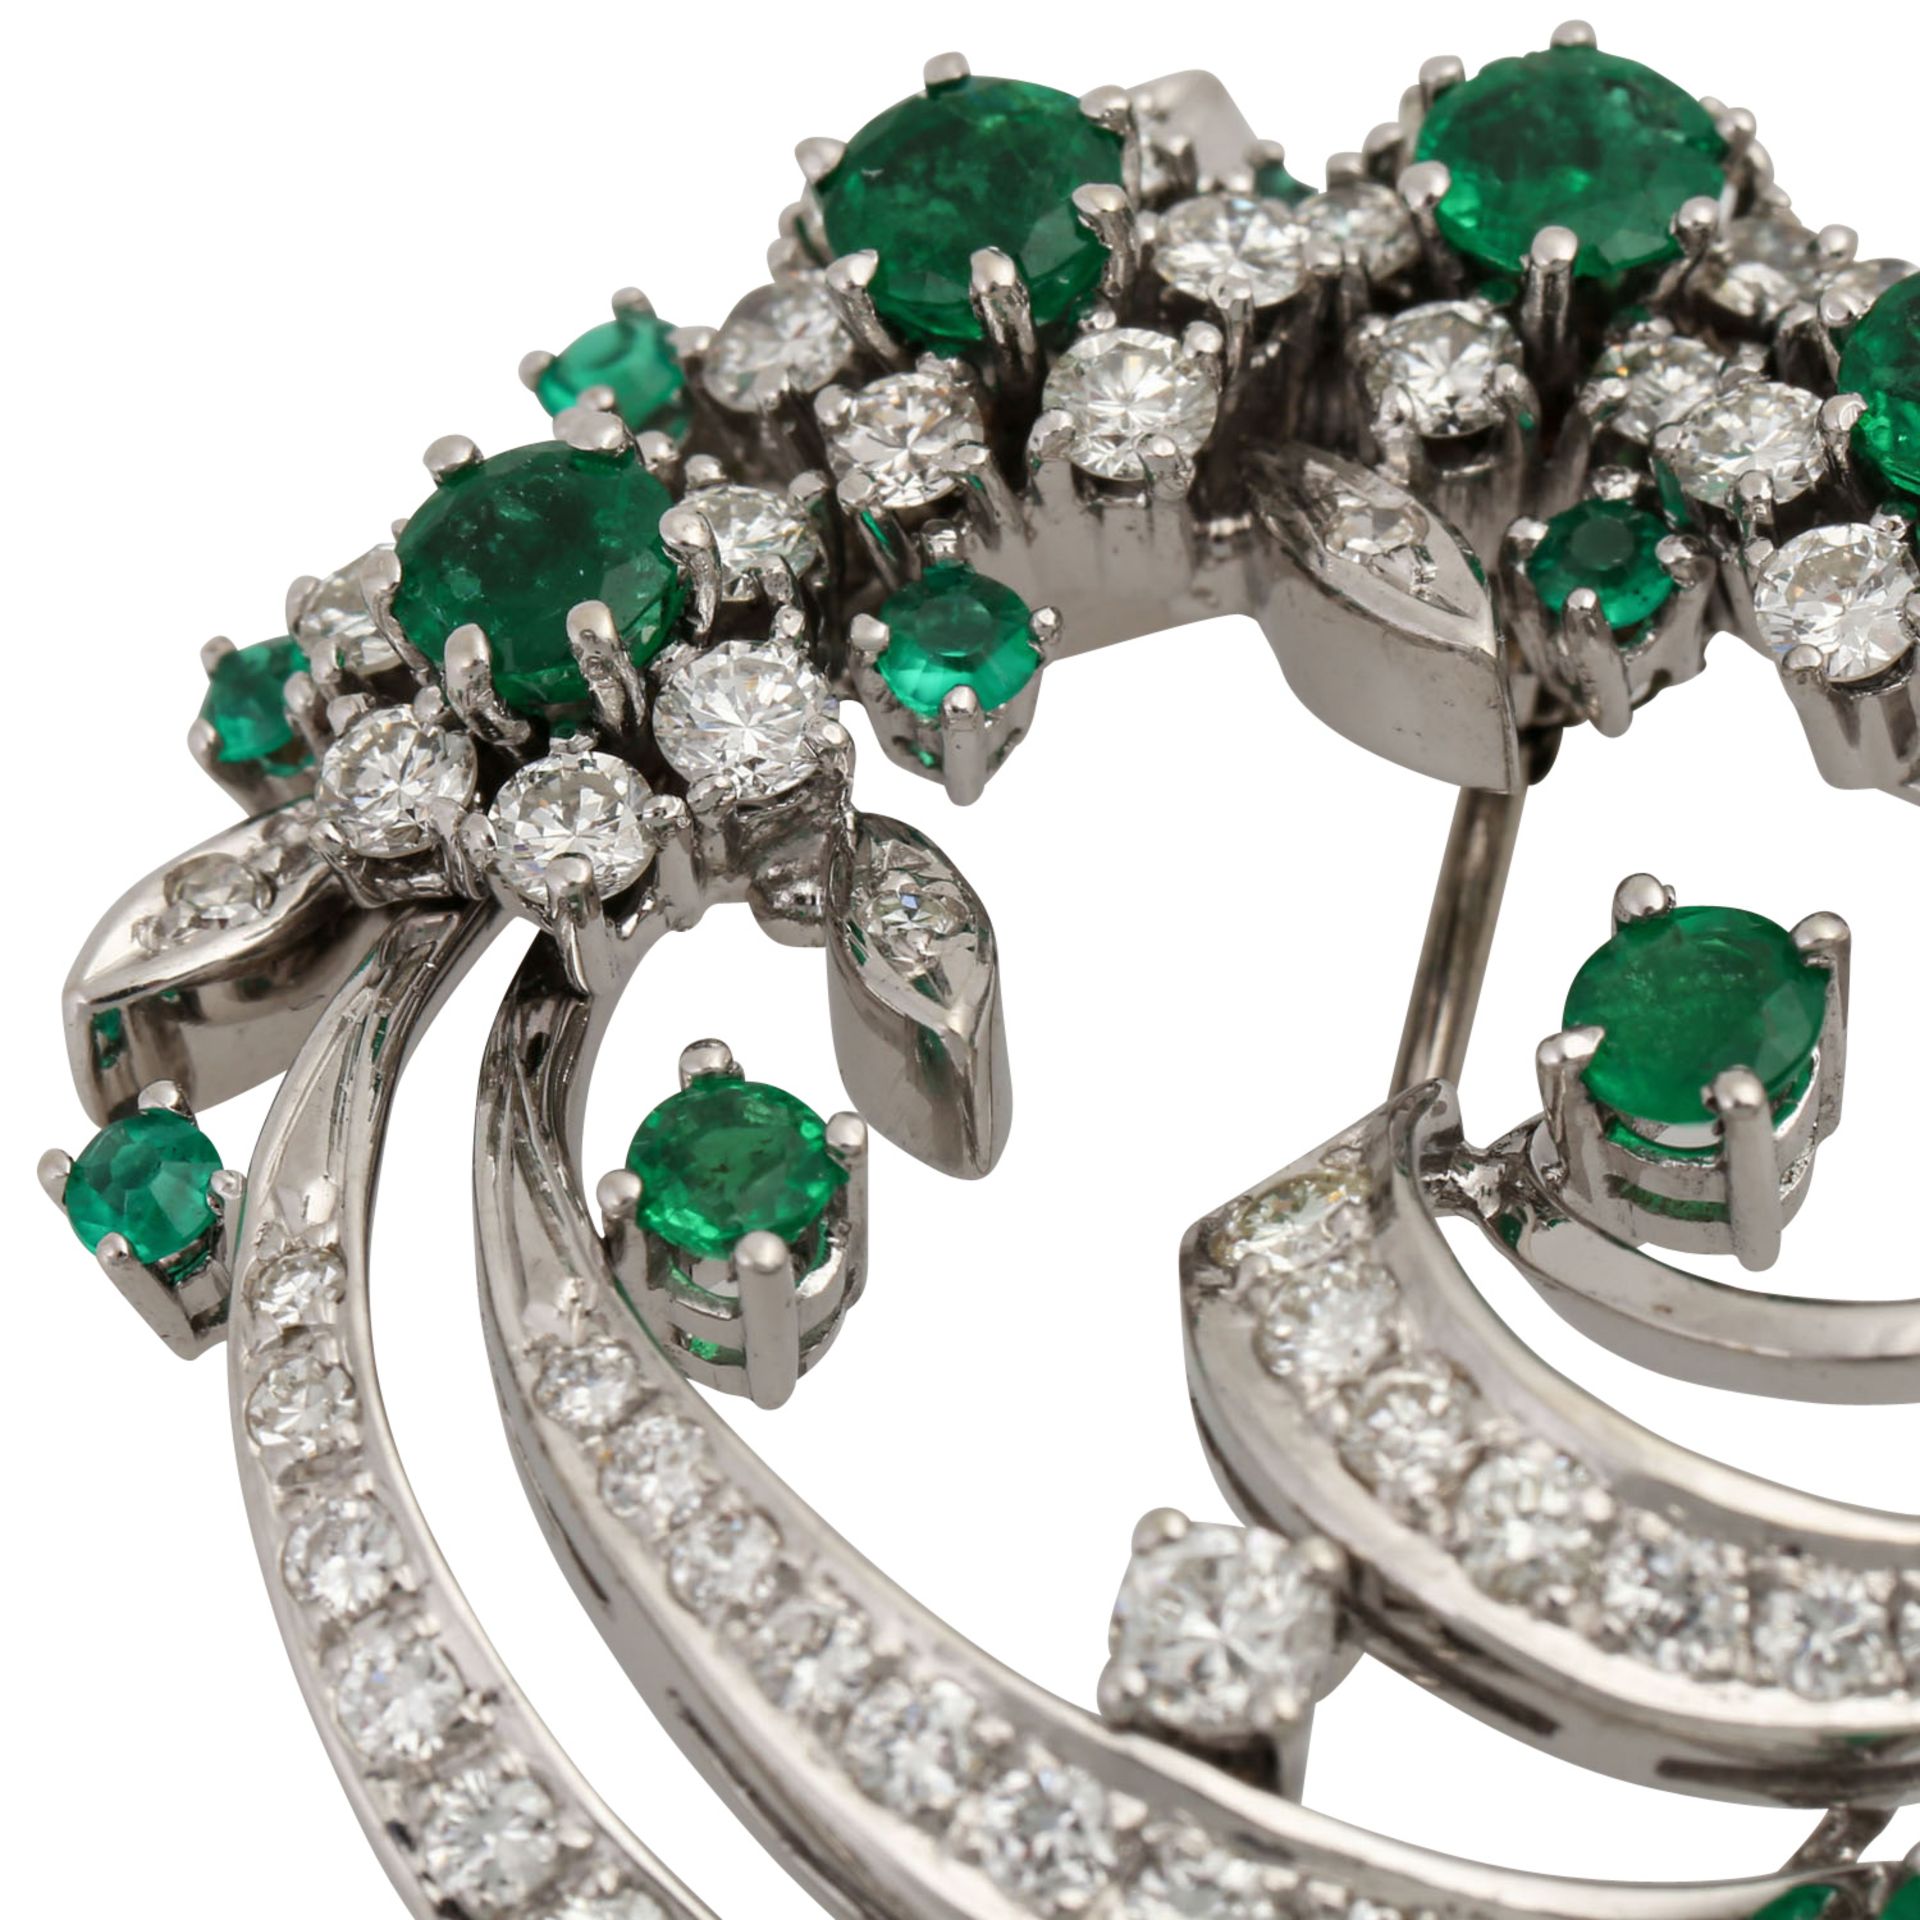 Brosche mit schönen Smaragden und Diamanten von zus. ca. 2,2 ct, Brillant- und Achtka - Image 5 of 5